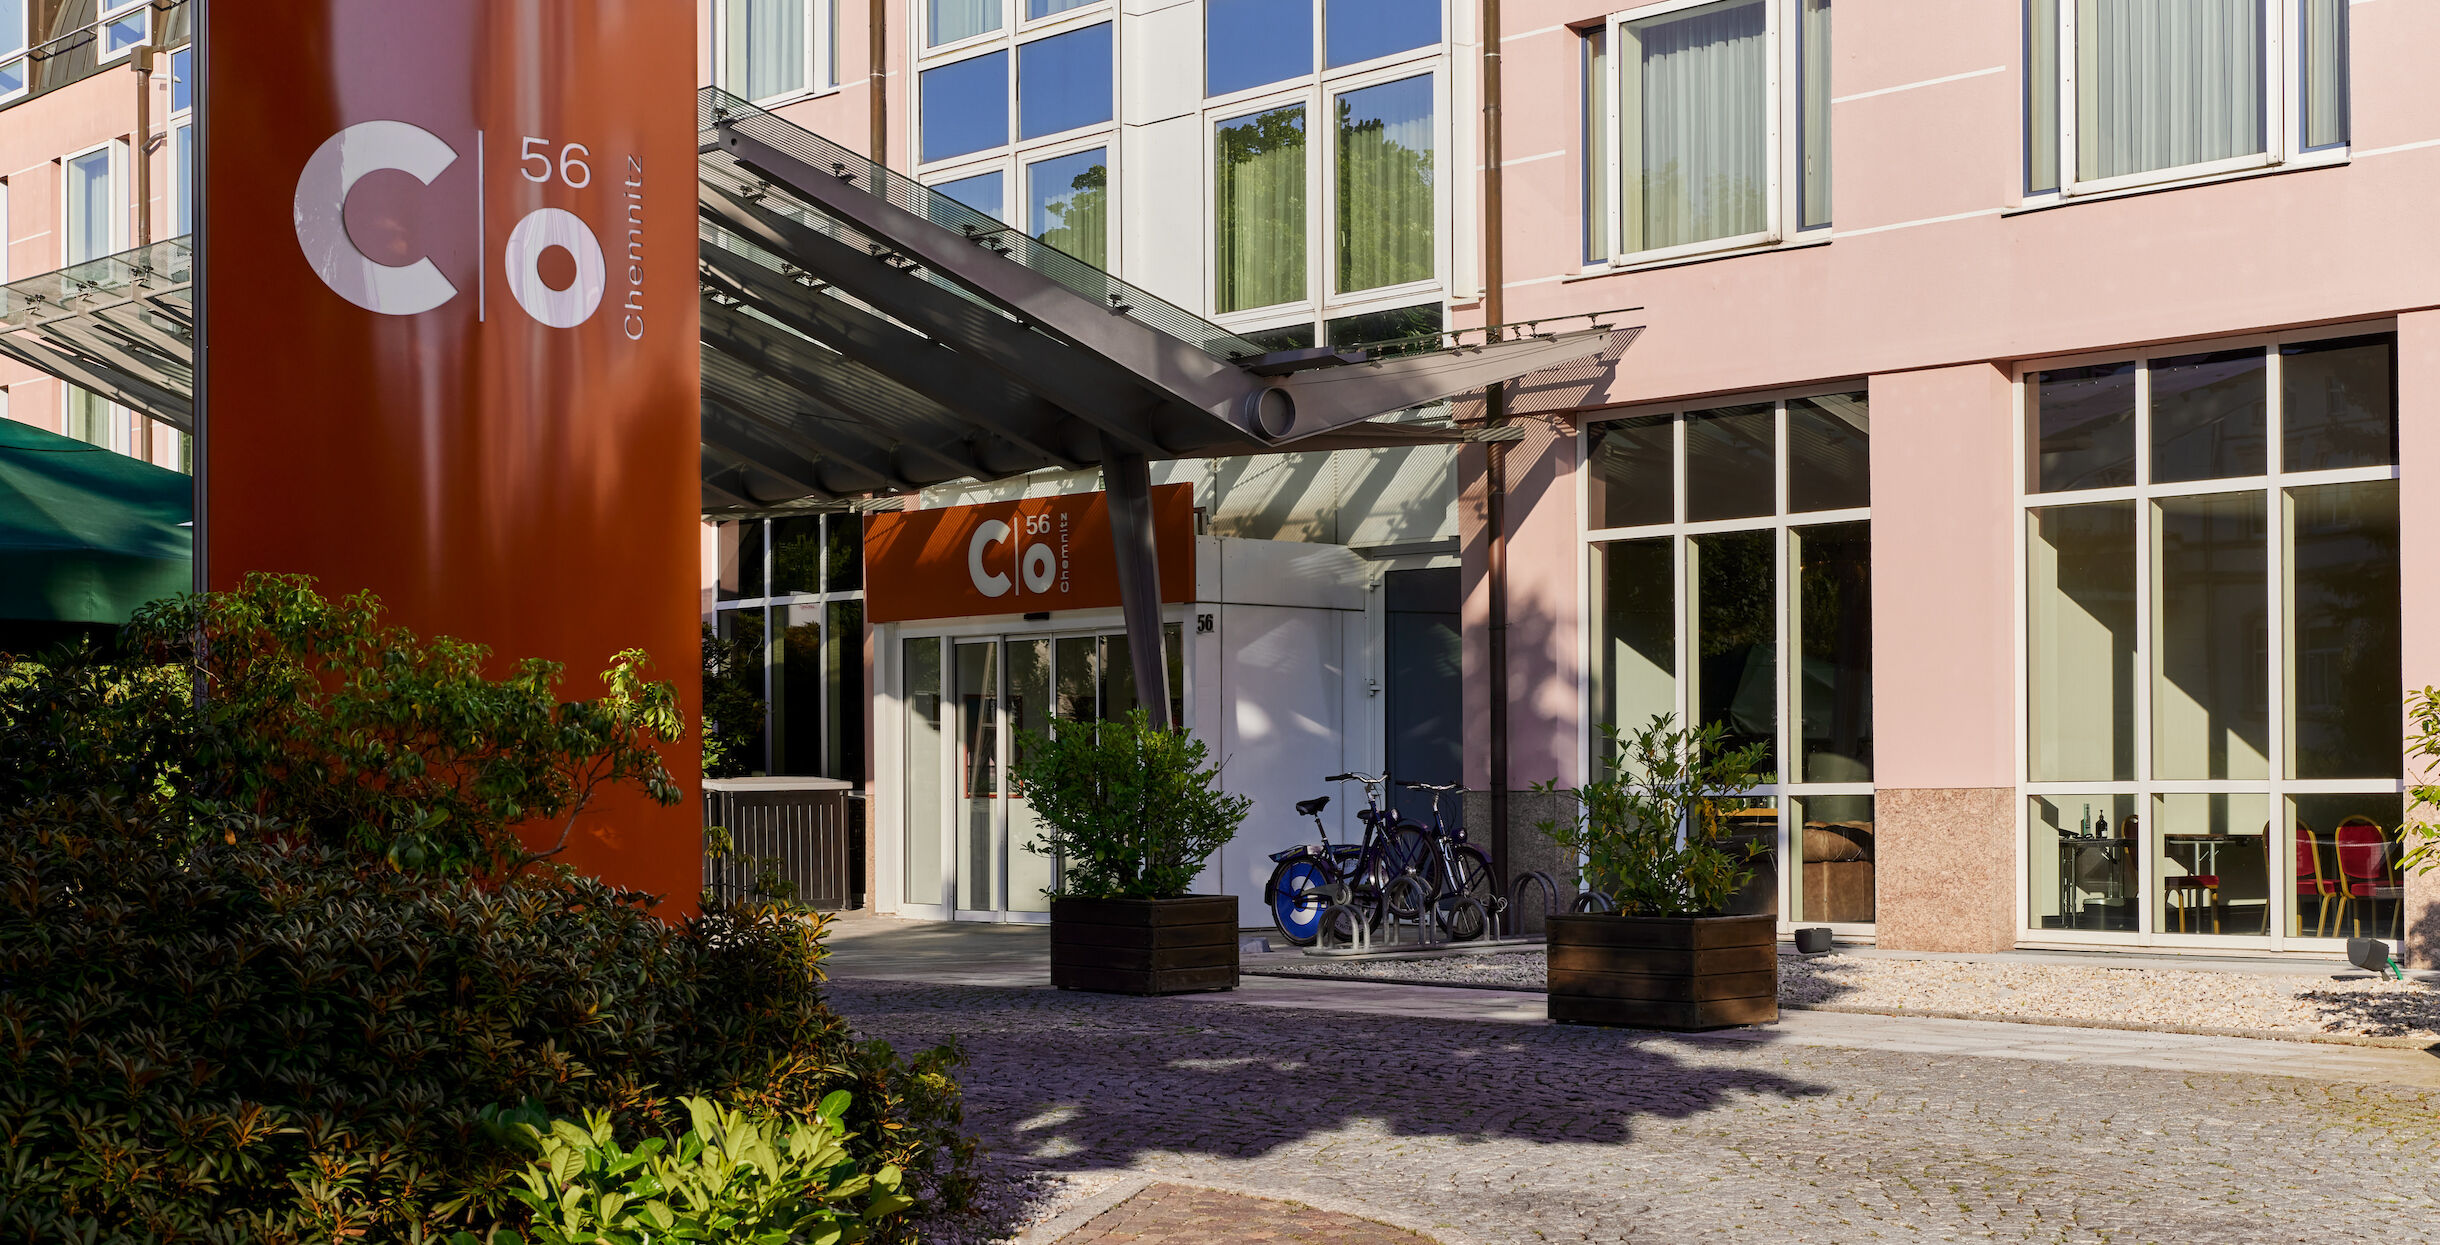 Hotel Chemnitz Co56 Eingangsbereich aussen seitlich